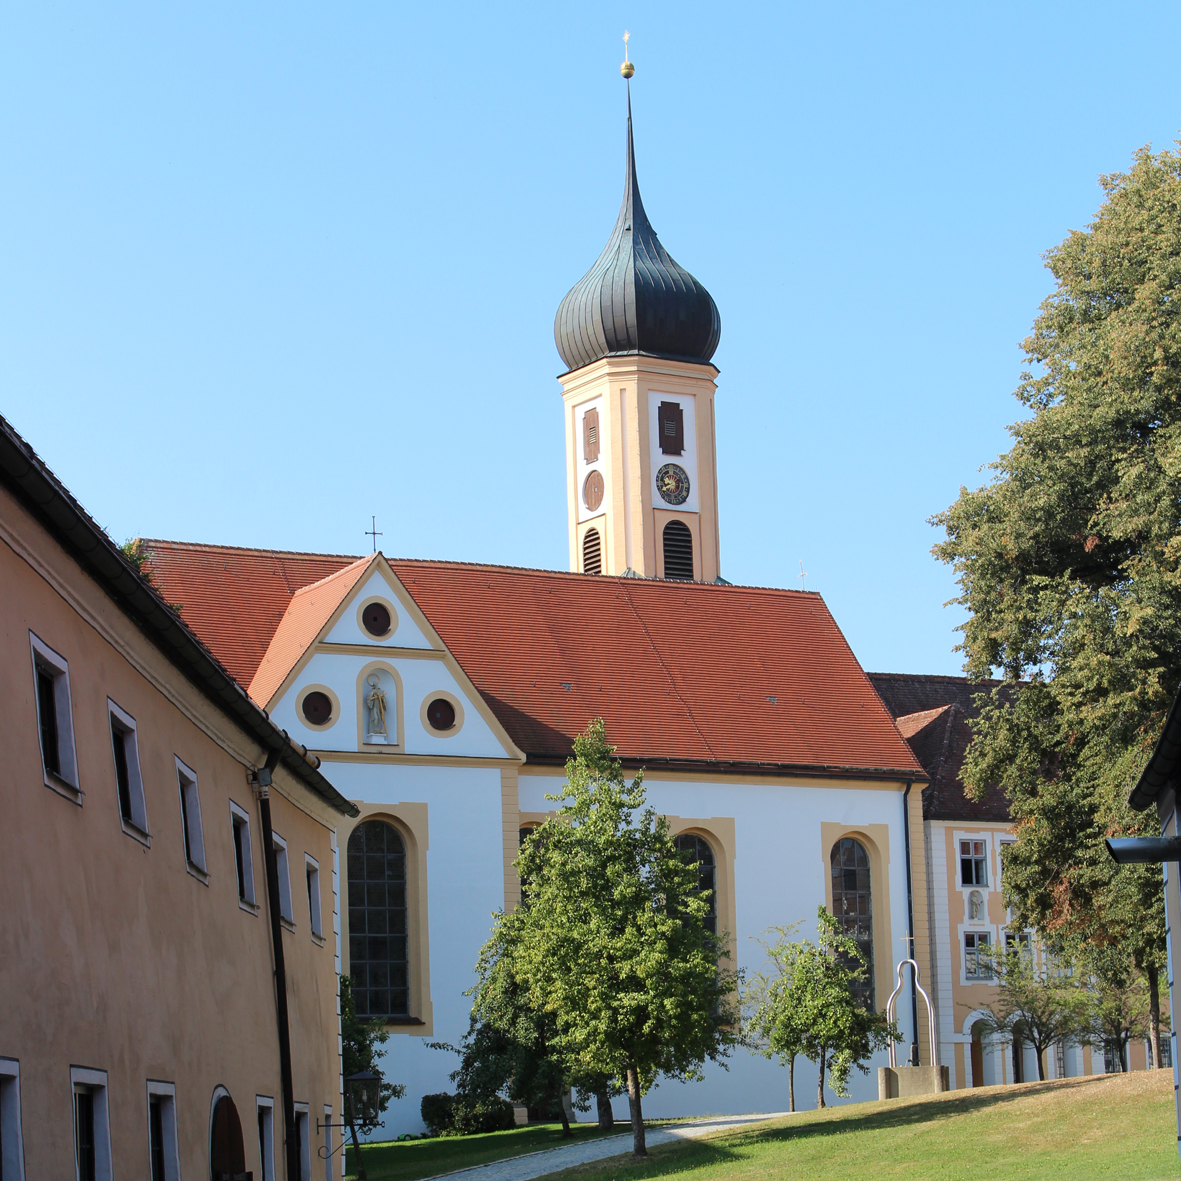 Abteikirche mit Turm vor blauem Himmel